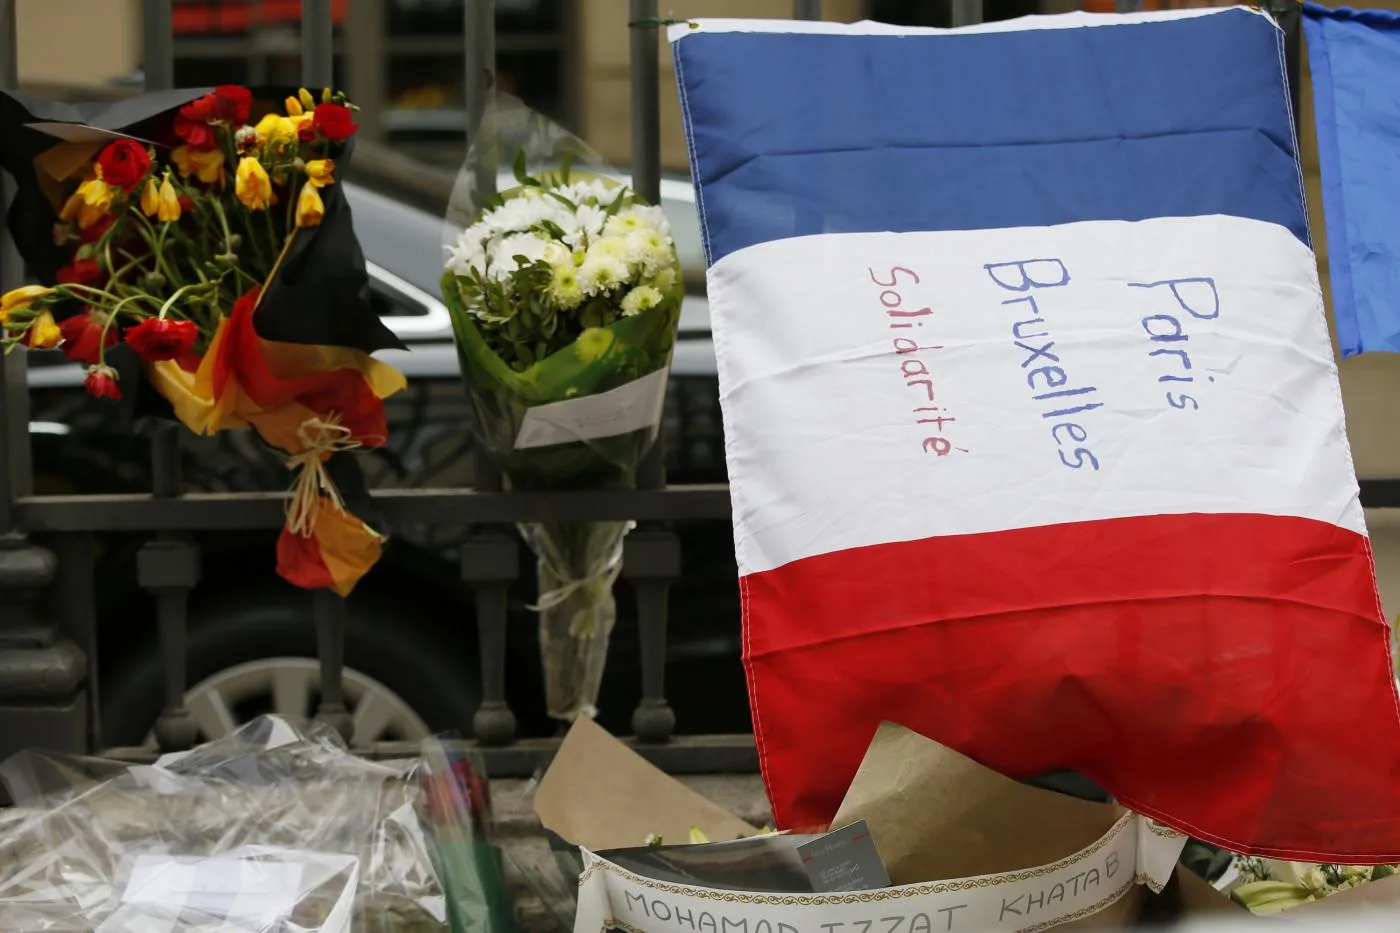 Paris_Attacks